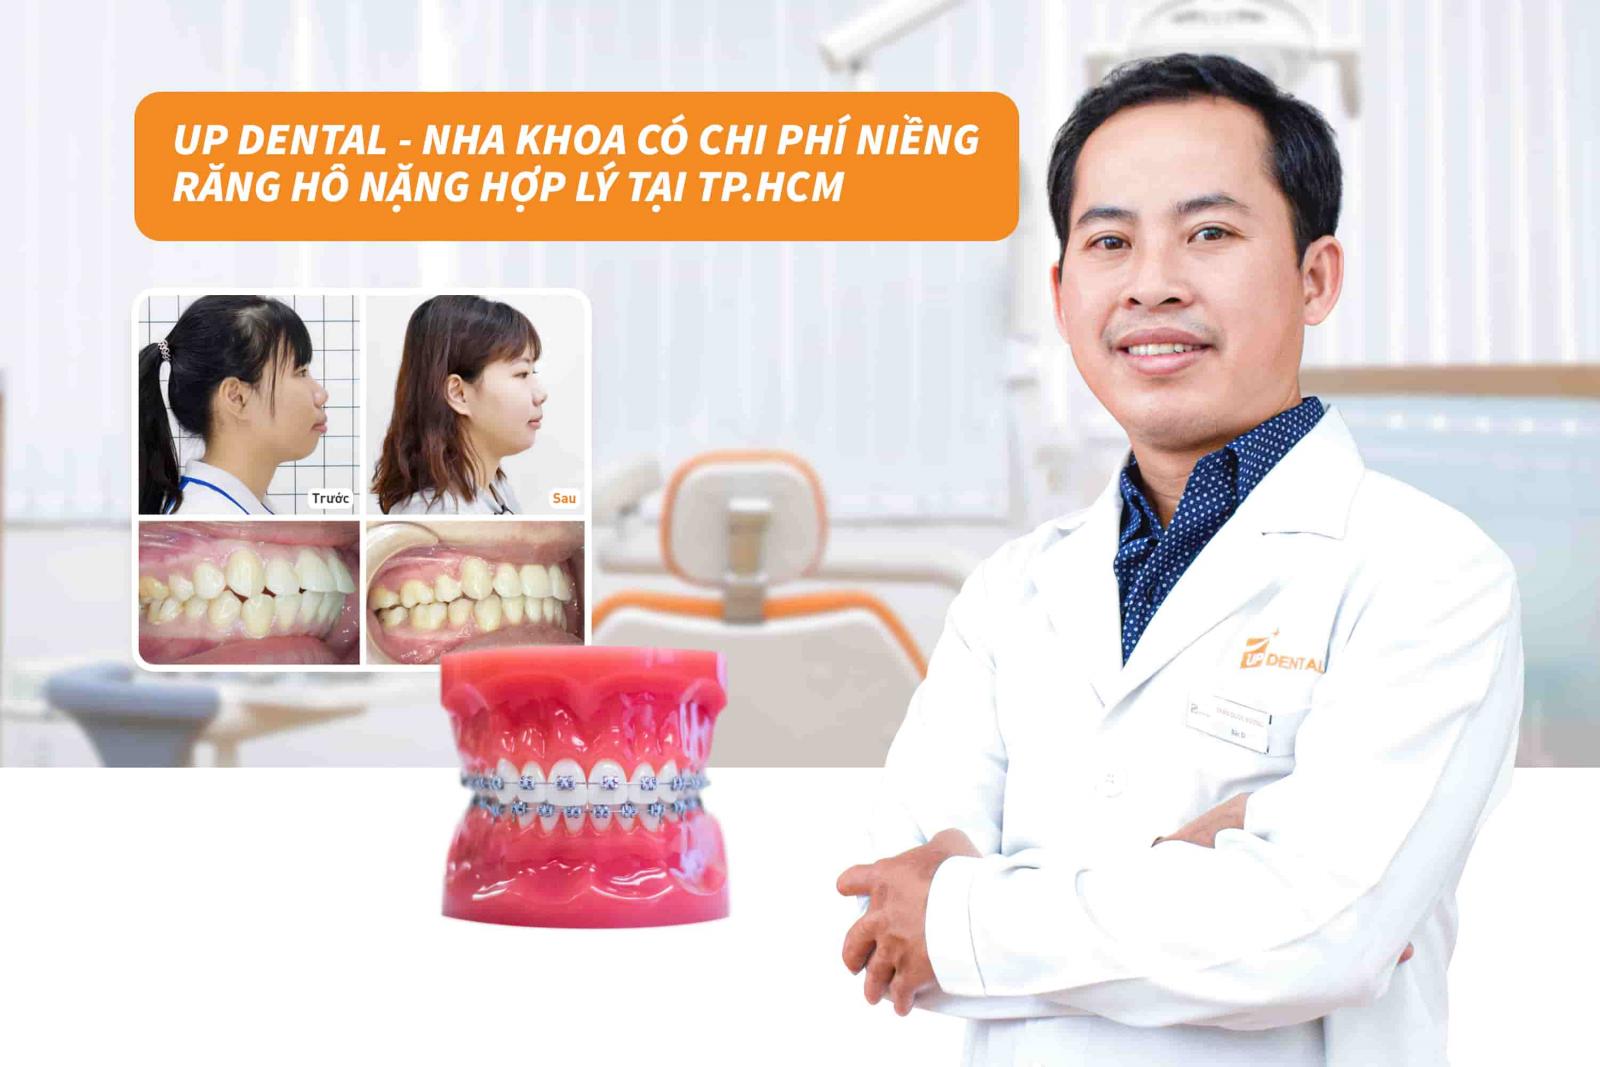 Up Dental - Nha khoa có chi phí niềng răng hô nặng hợp lý tại TP.HCM